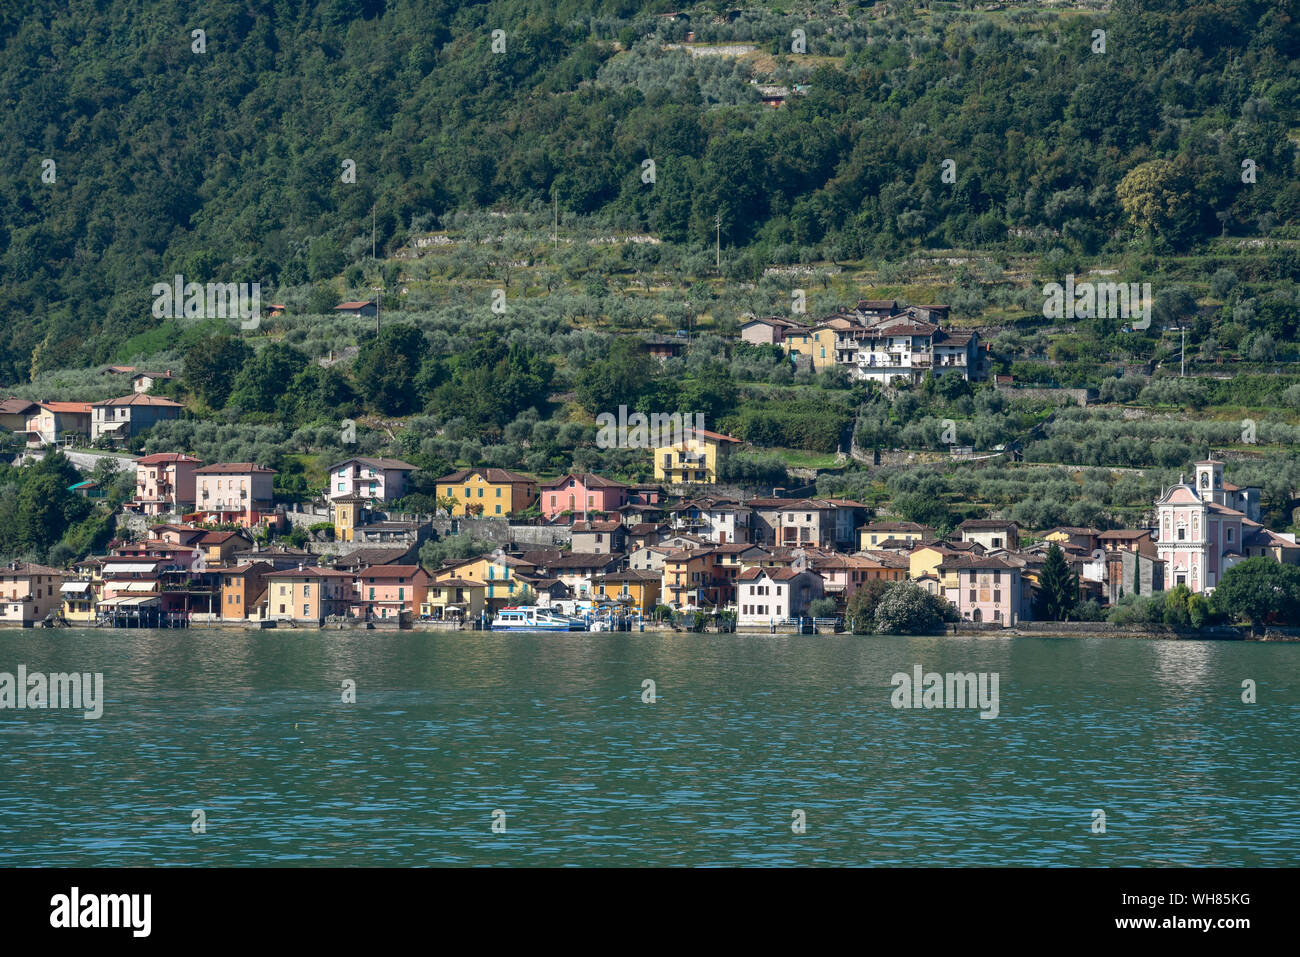 La aldea de Carzano en lago de Iseo en Italia Foto de stock